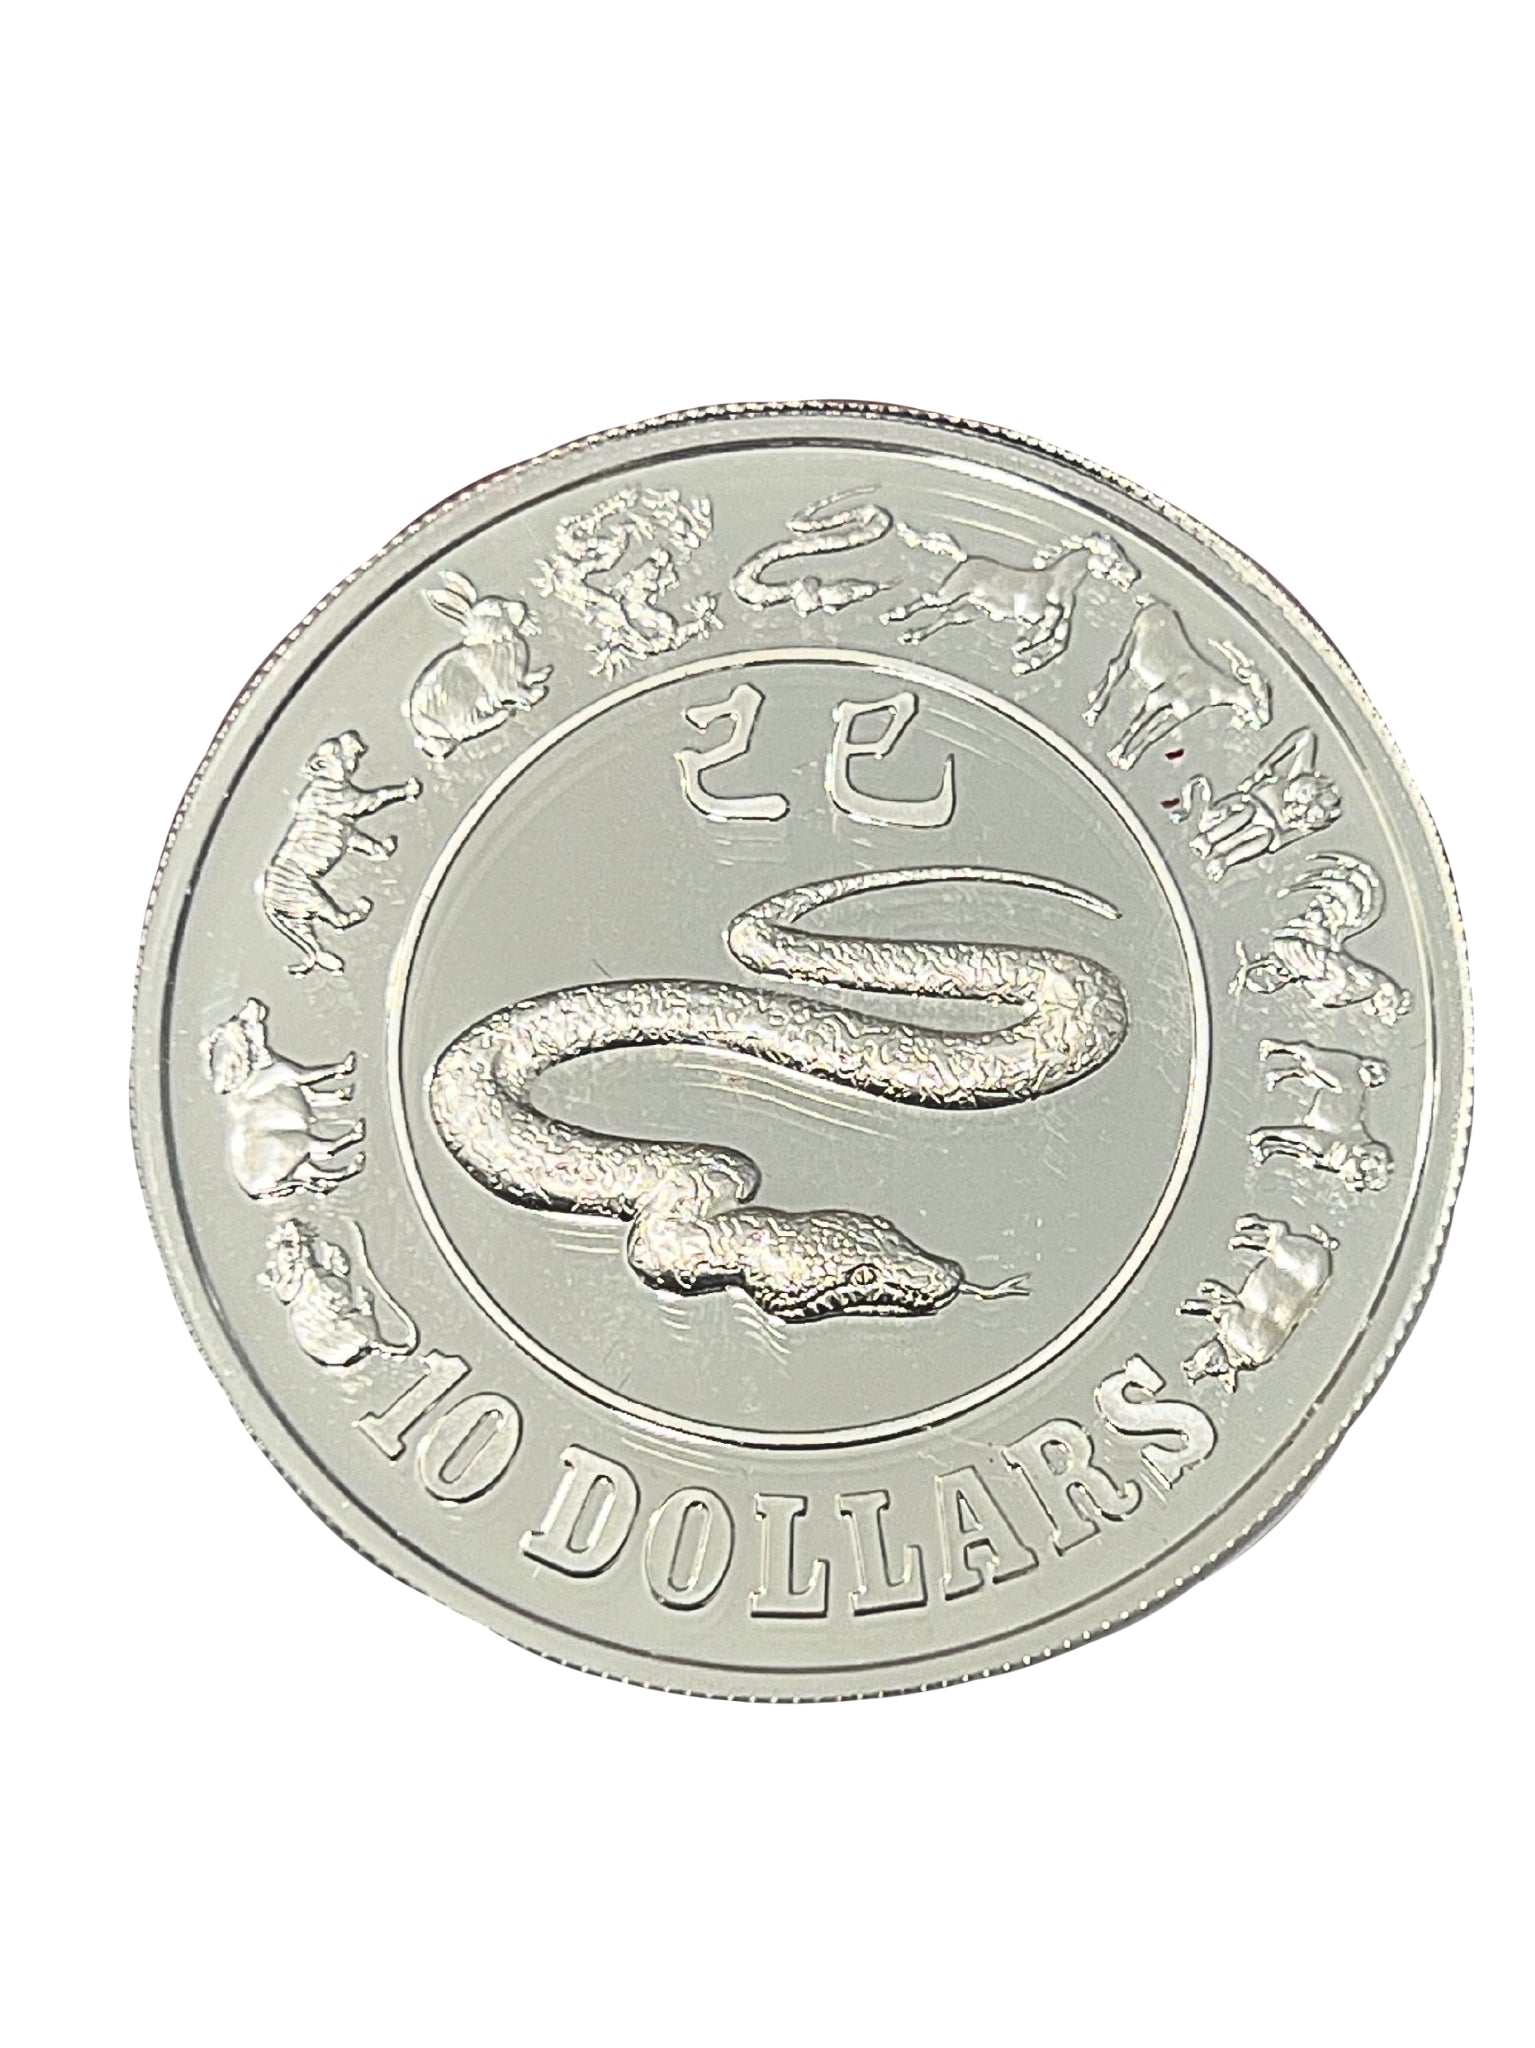 Zodiac Snake 1989 $10 Silver Coin